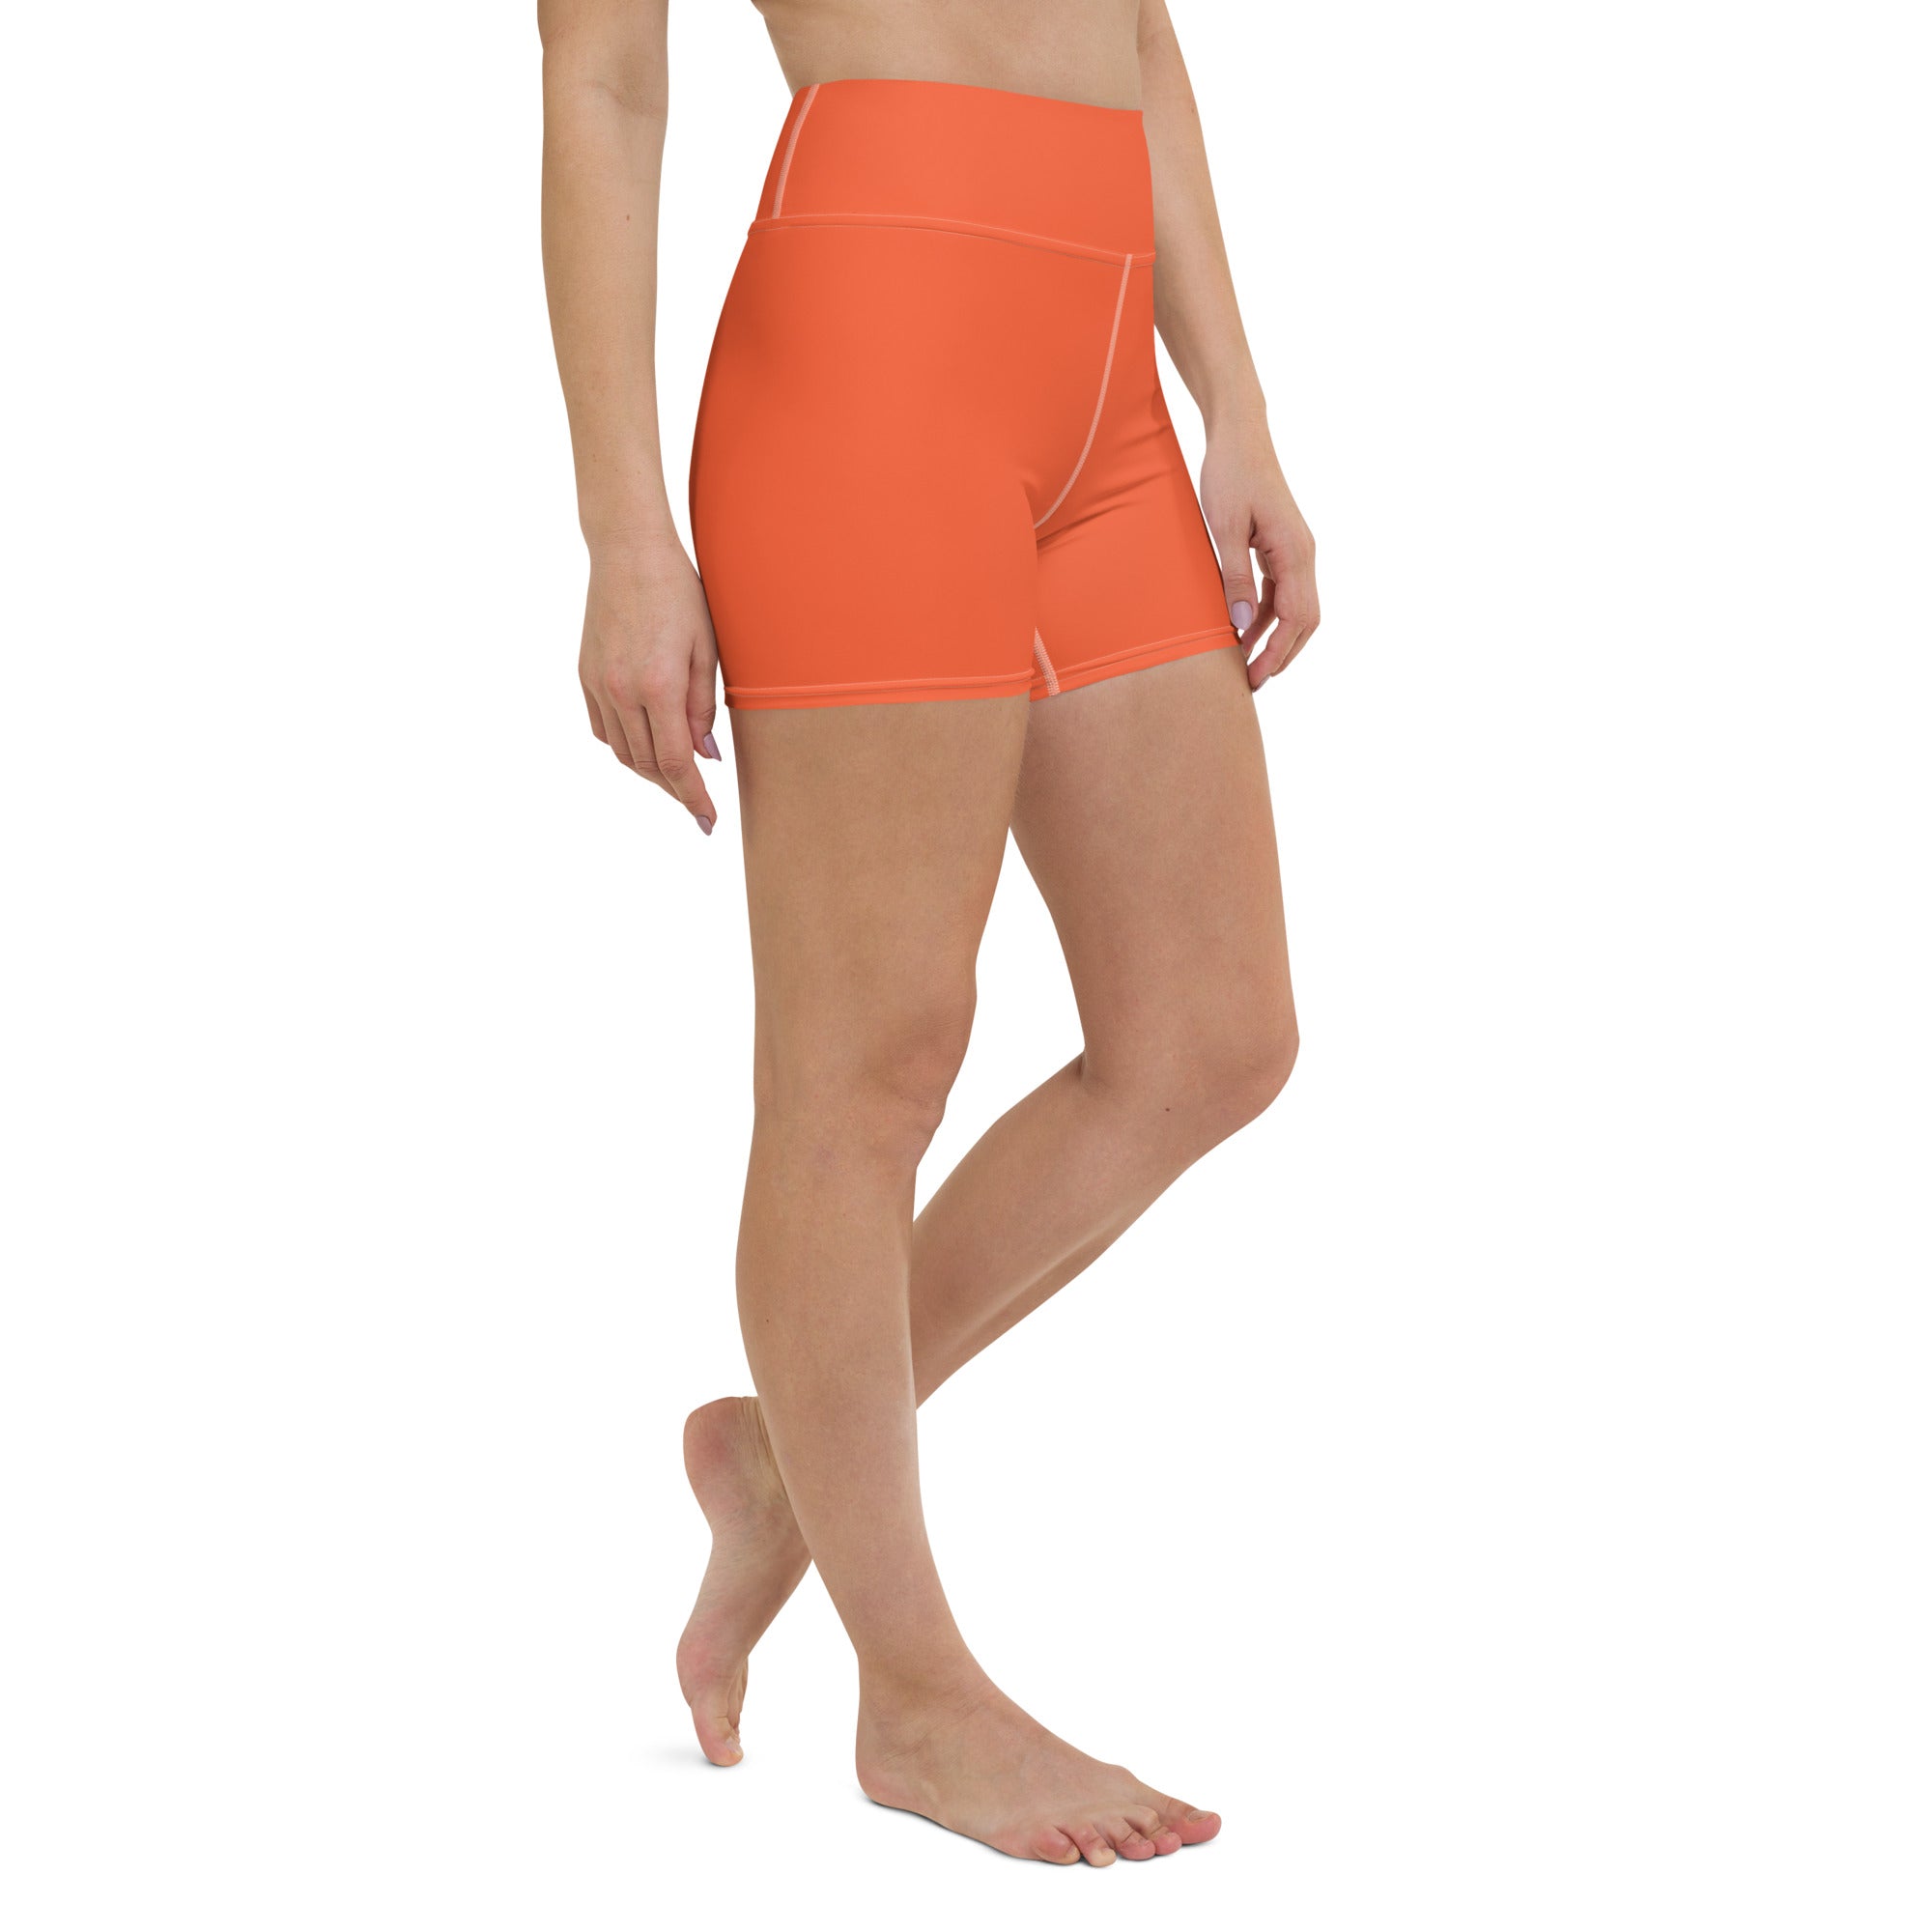 Orange Yoga Shorts